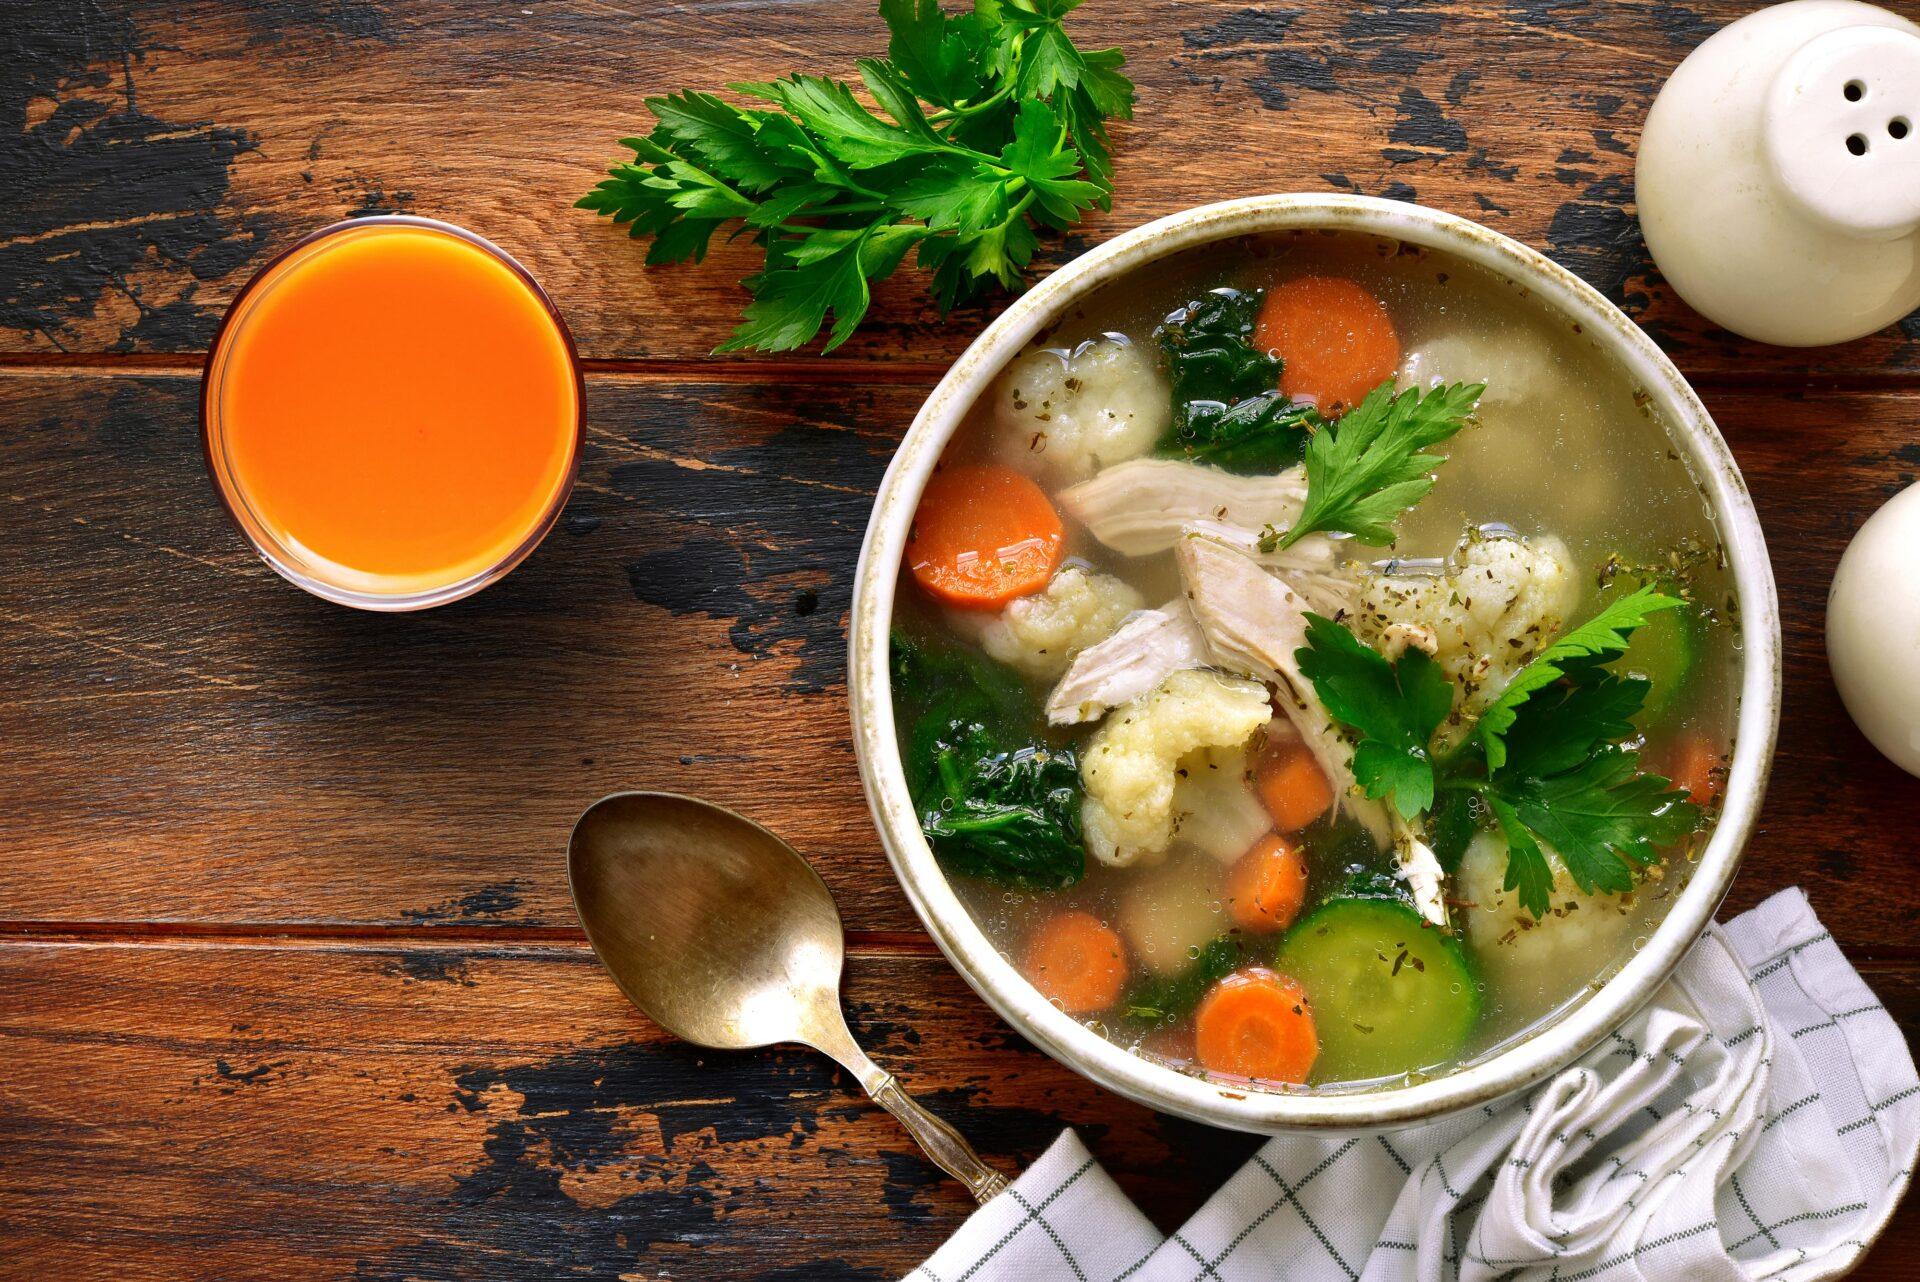 Zdrowy smak zimy. Co jeść, aby odżywić organizm podczas chłodnych miesięcy?